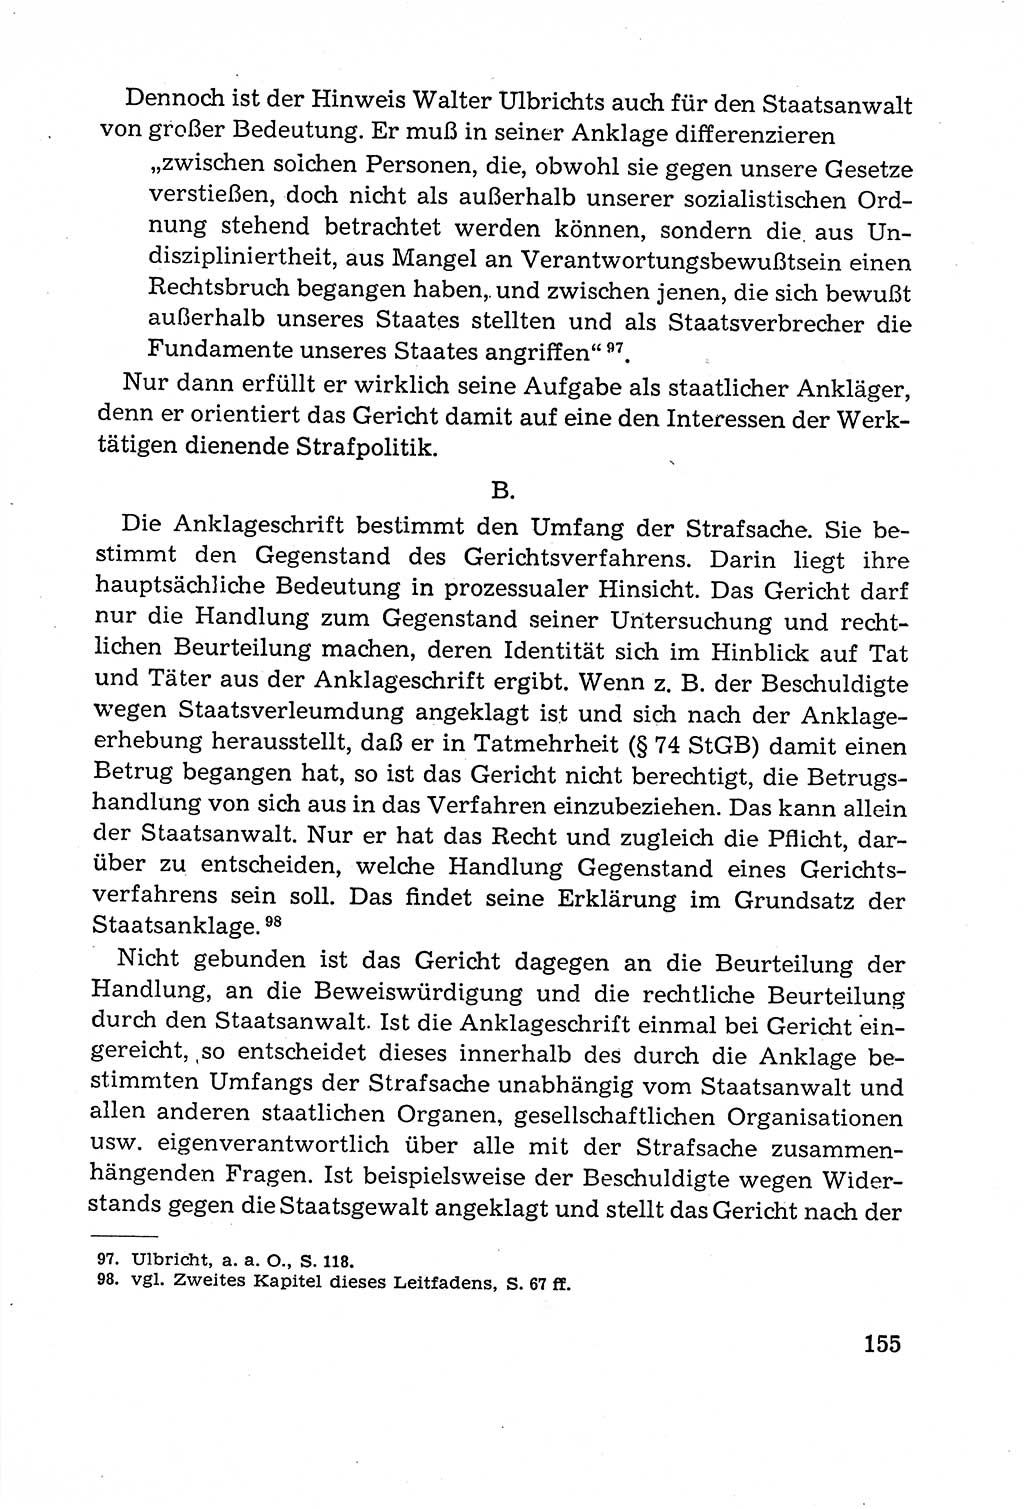 Leitfaden des Strafprozeßrechts der Deutschen Demokratischen Republik (DDR) 1959, Seite 155 (LF StPR DDR 1959, S. 155)